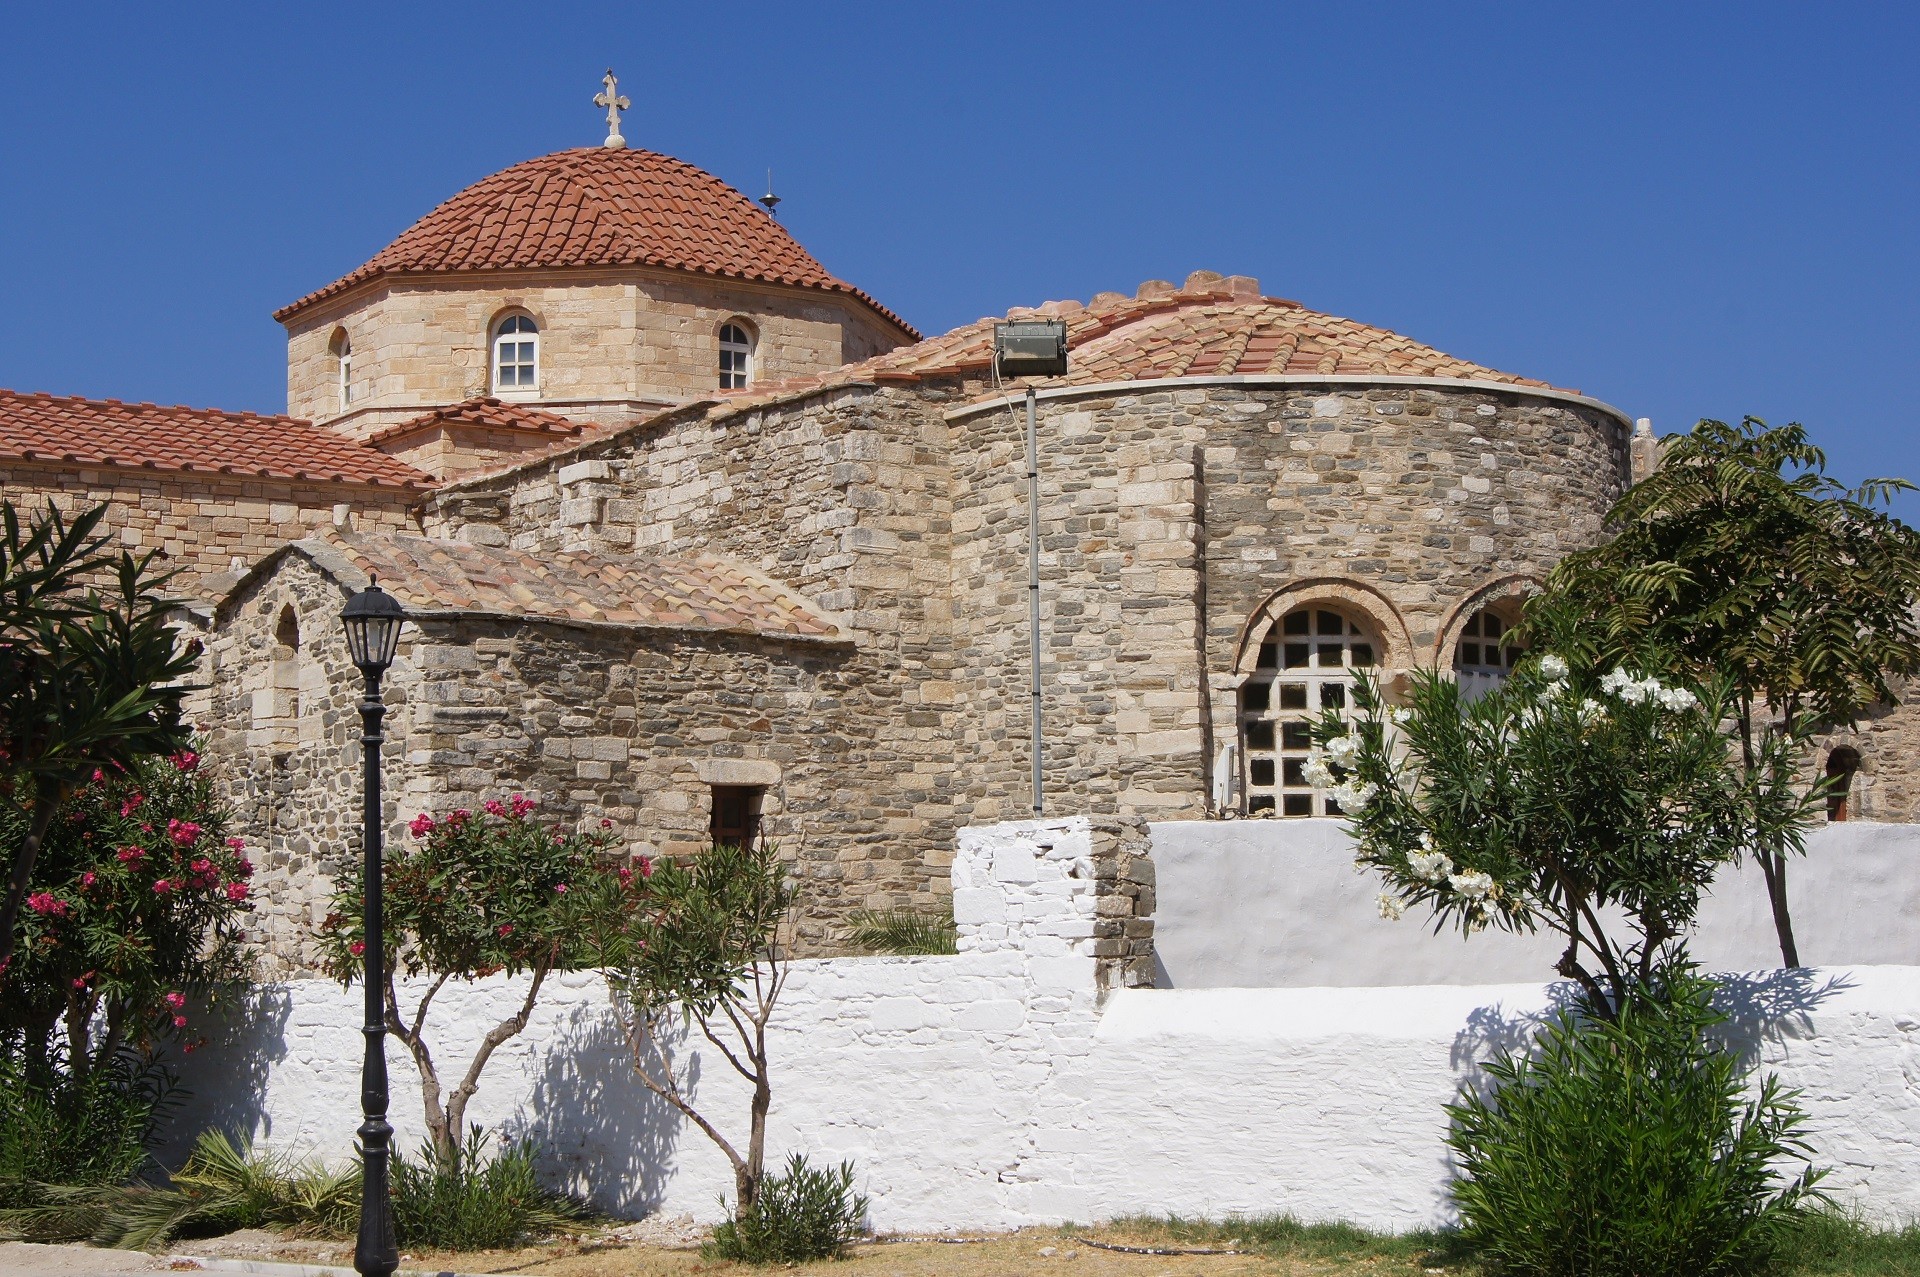 kościół wybudowany z kamienia w piaskowym kolorze z czerwonymi kopułami na tle niebieskiego nieba, przed kościołem biały niski murek